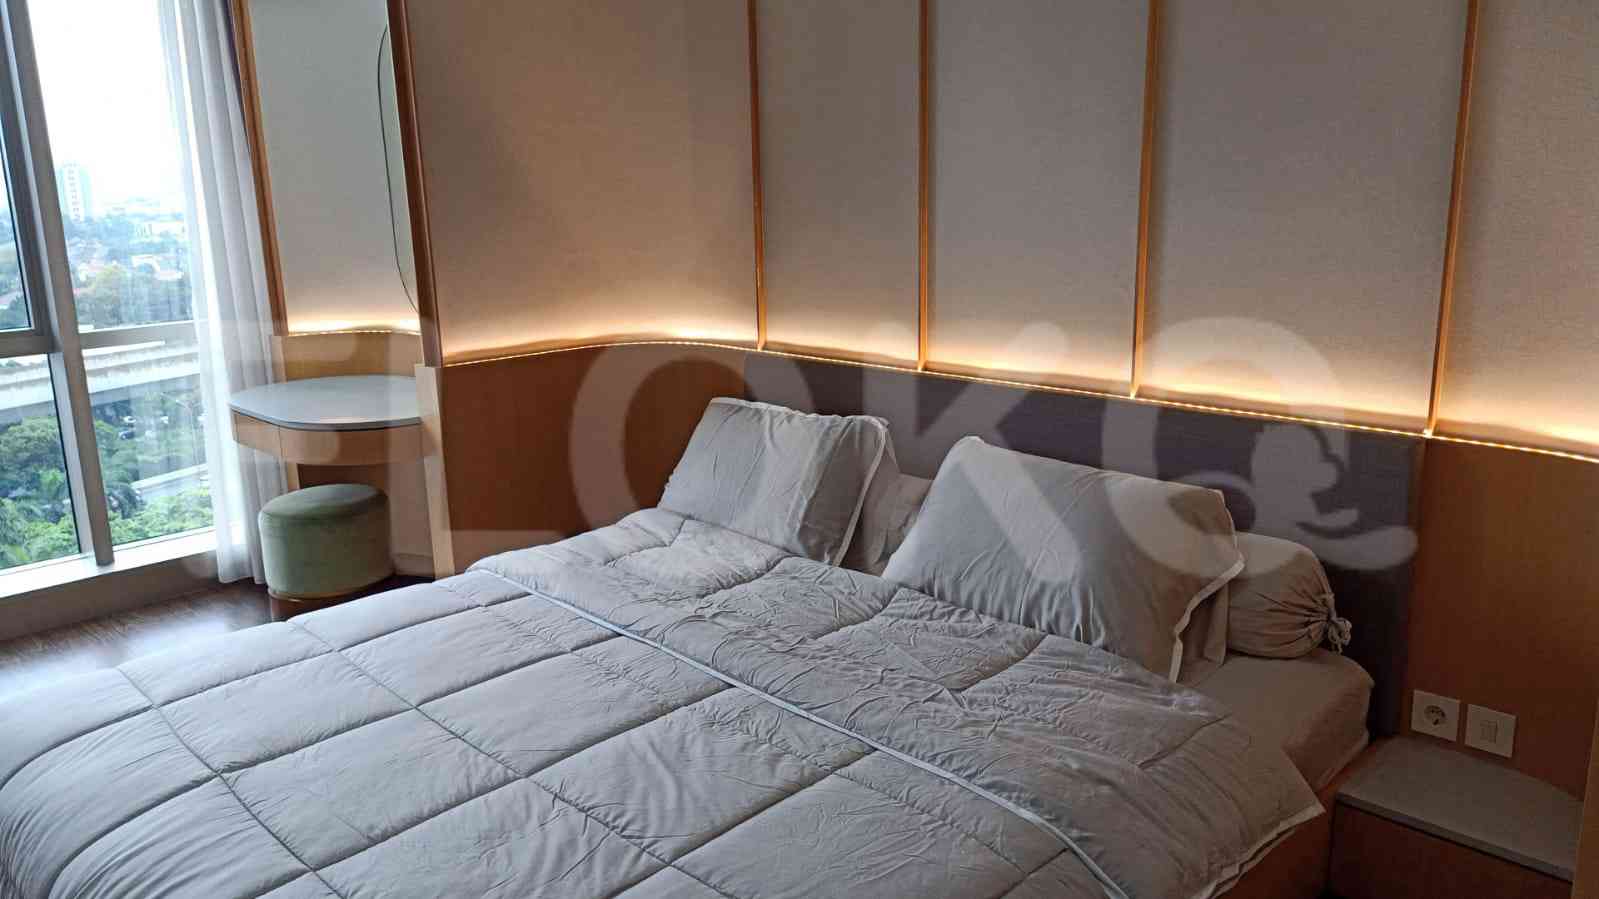 2 Bedroom on 12th Floor for Rent in Apartemen Branz Simatupang - ftbeee 1